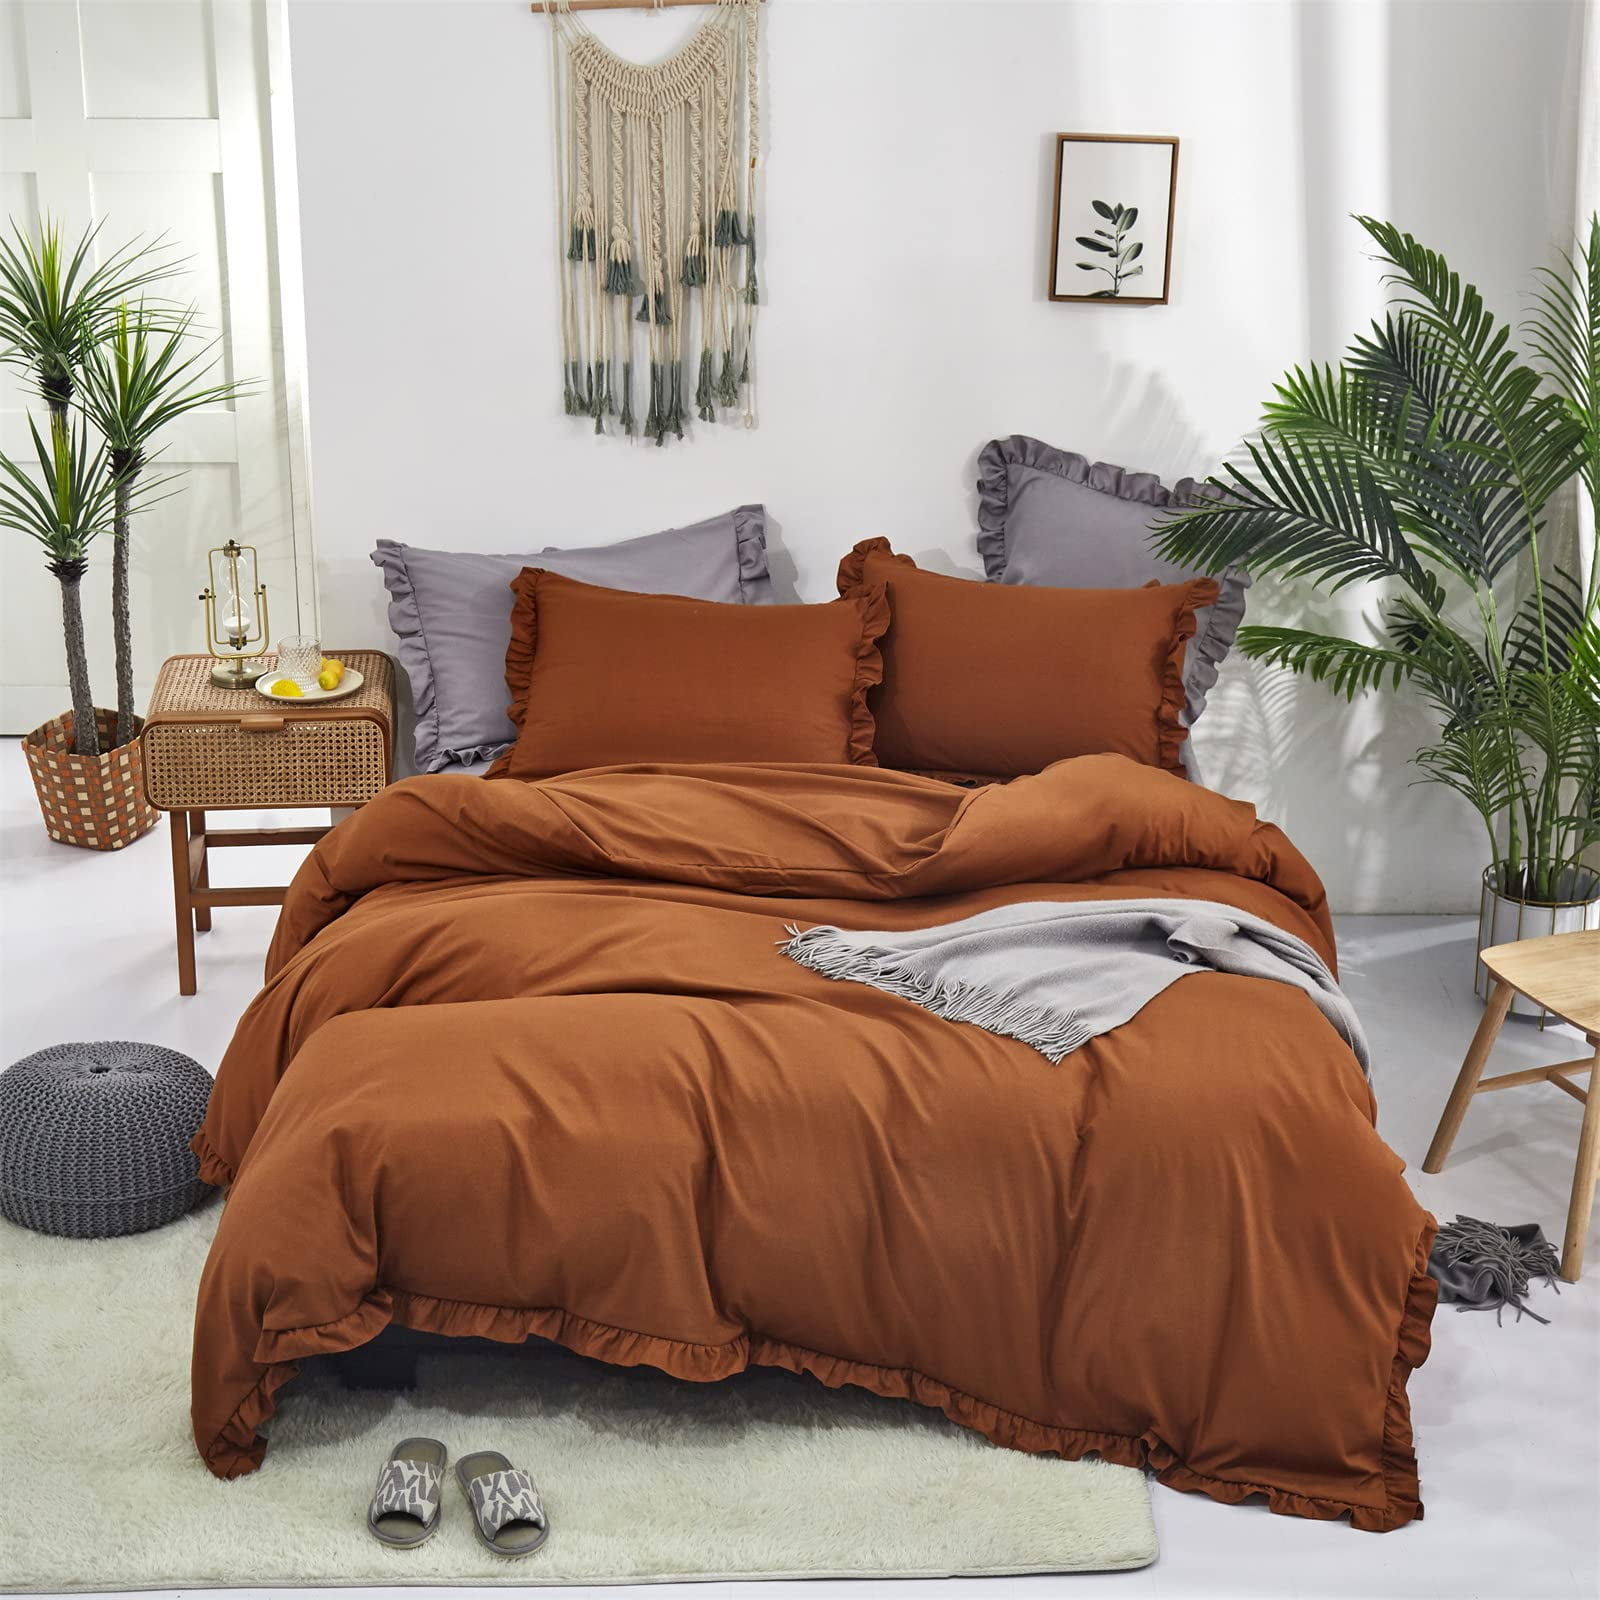  PERFEMET Burnt Orange King Comforter Set 3 Pieces